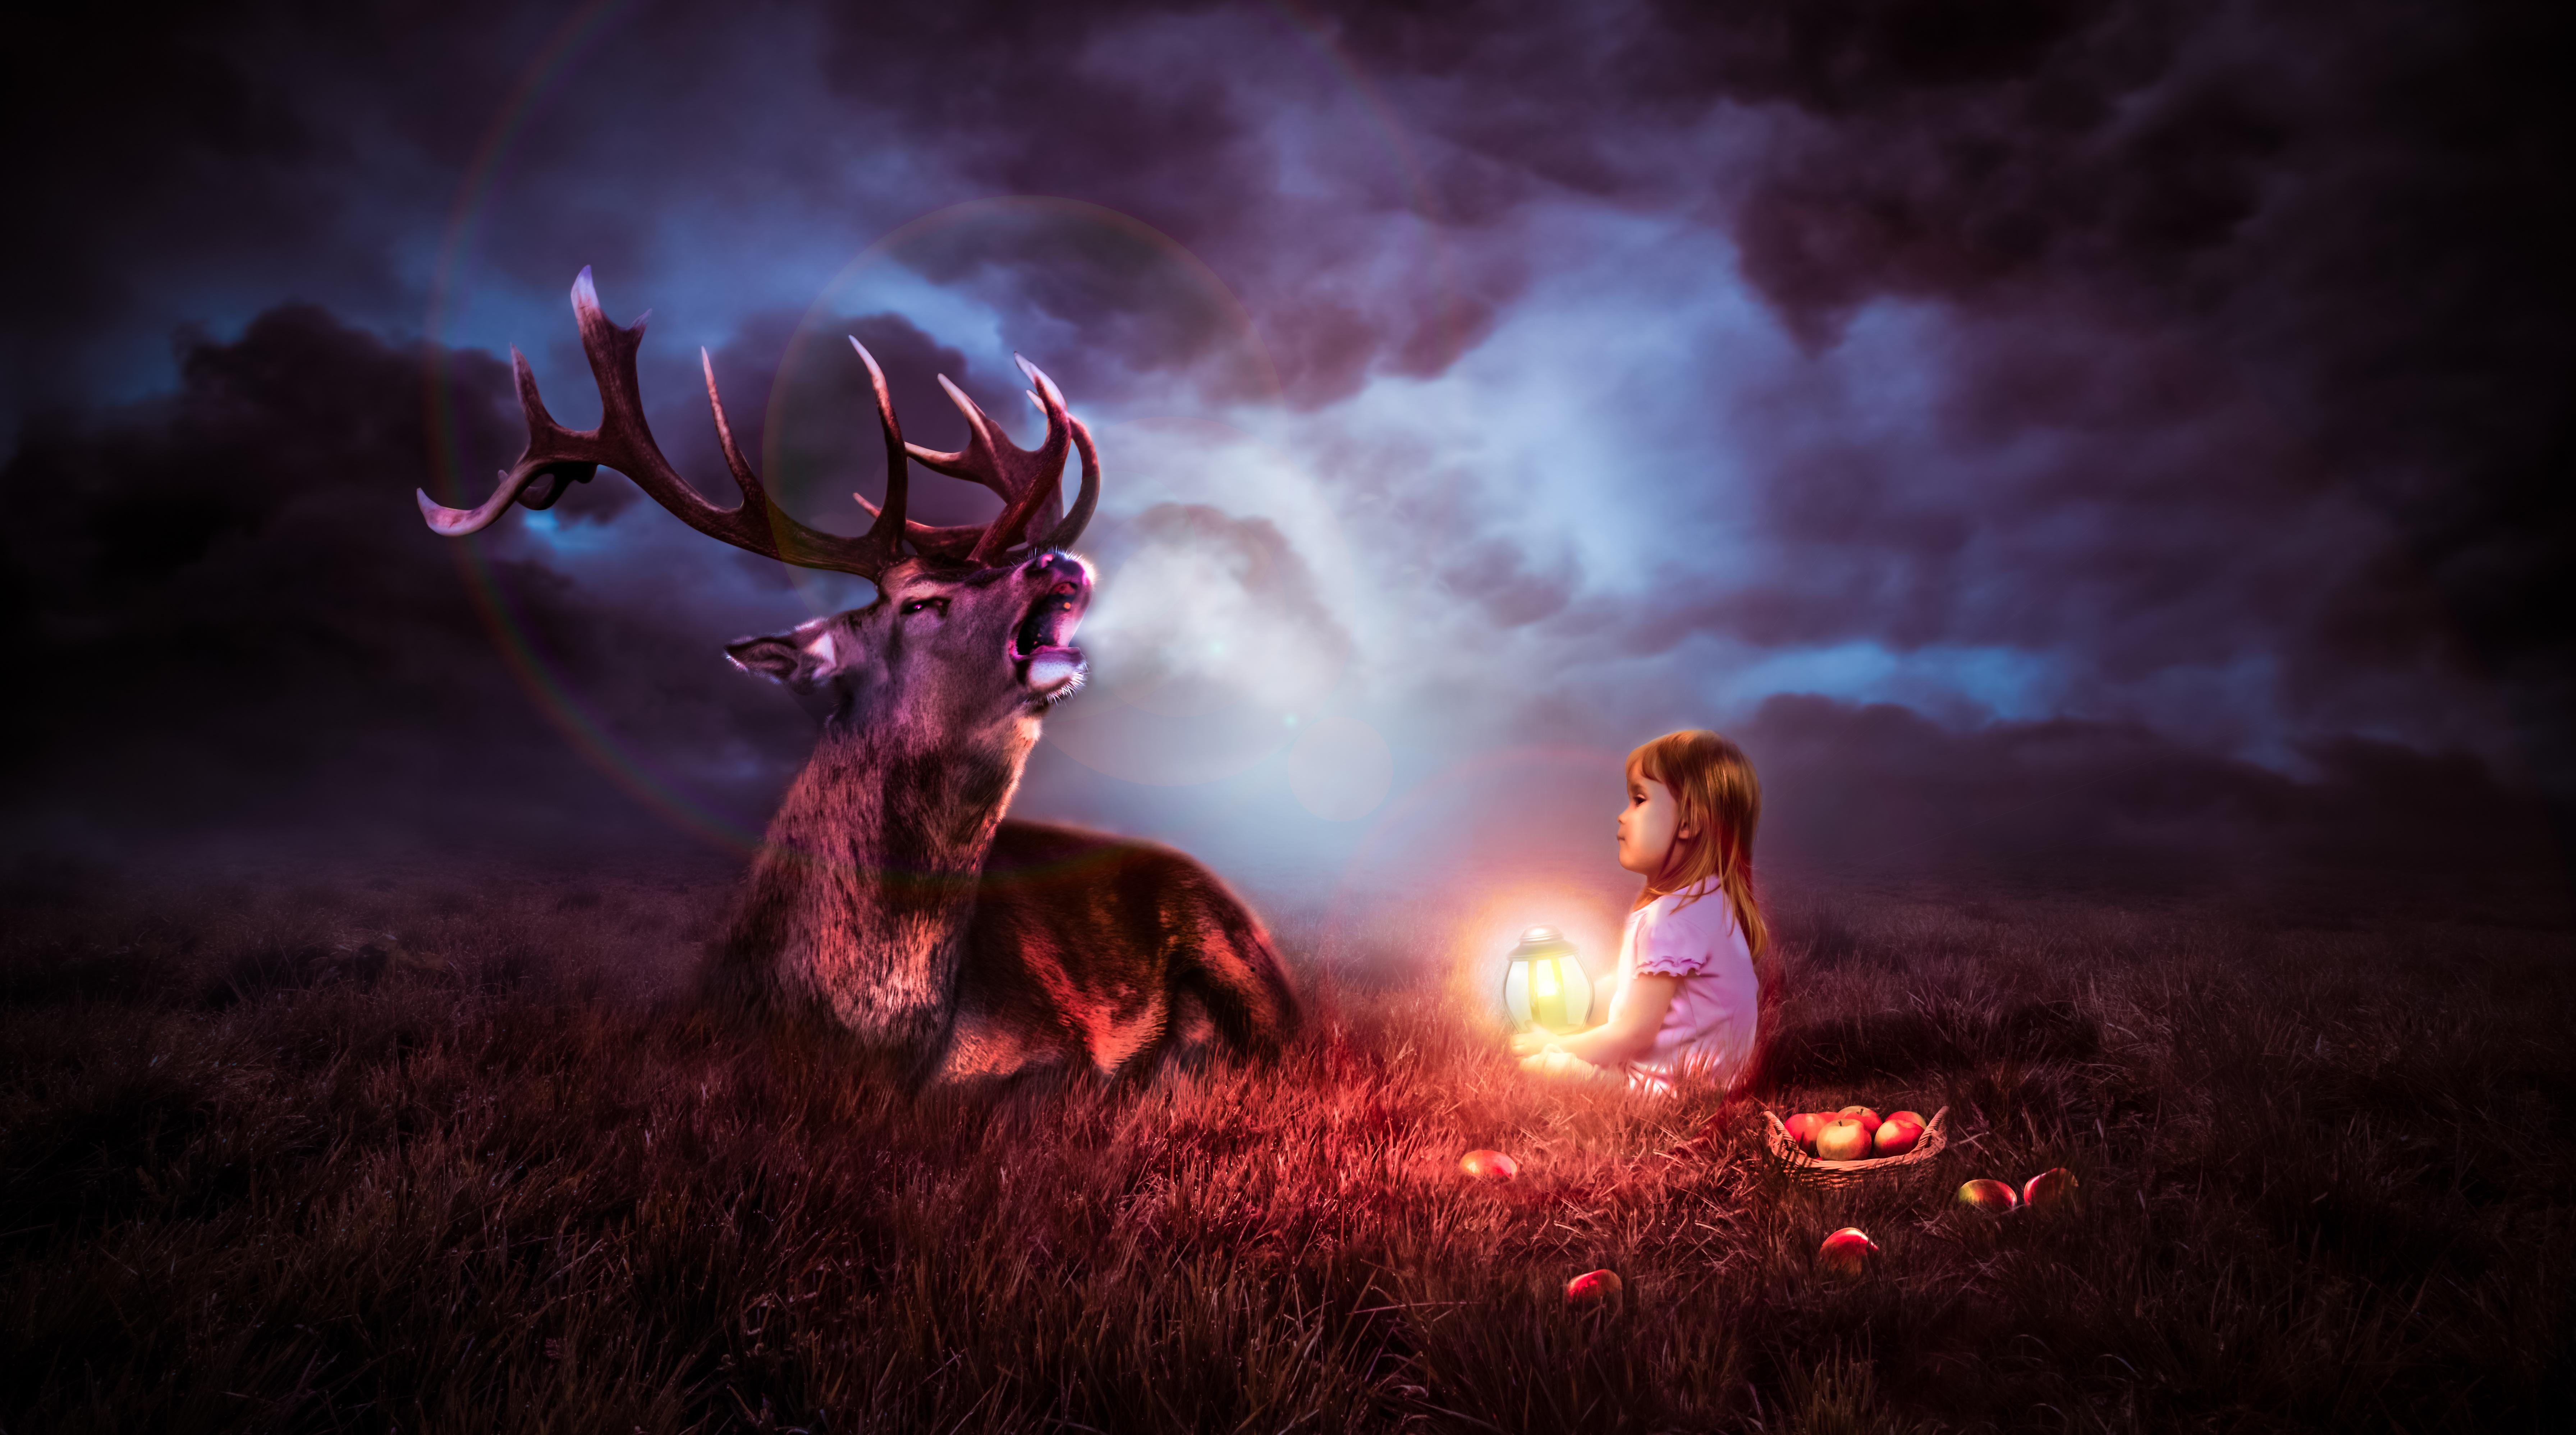 Night Sky Deer Fantasy 8k, HD Artist, 4k Wallpaper, Image